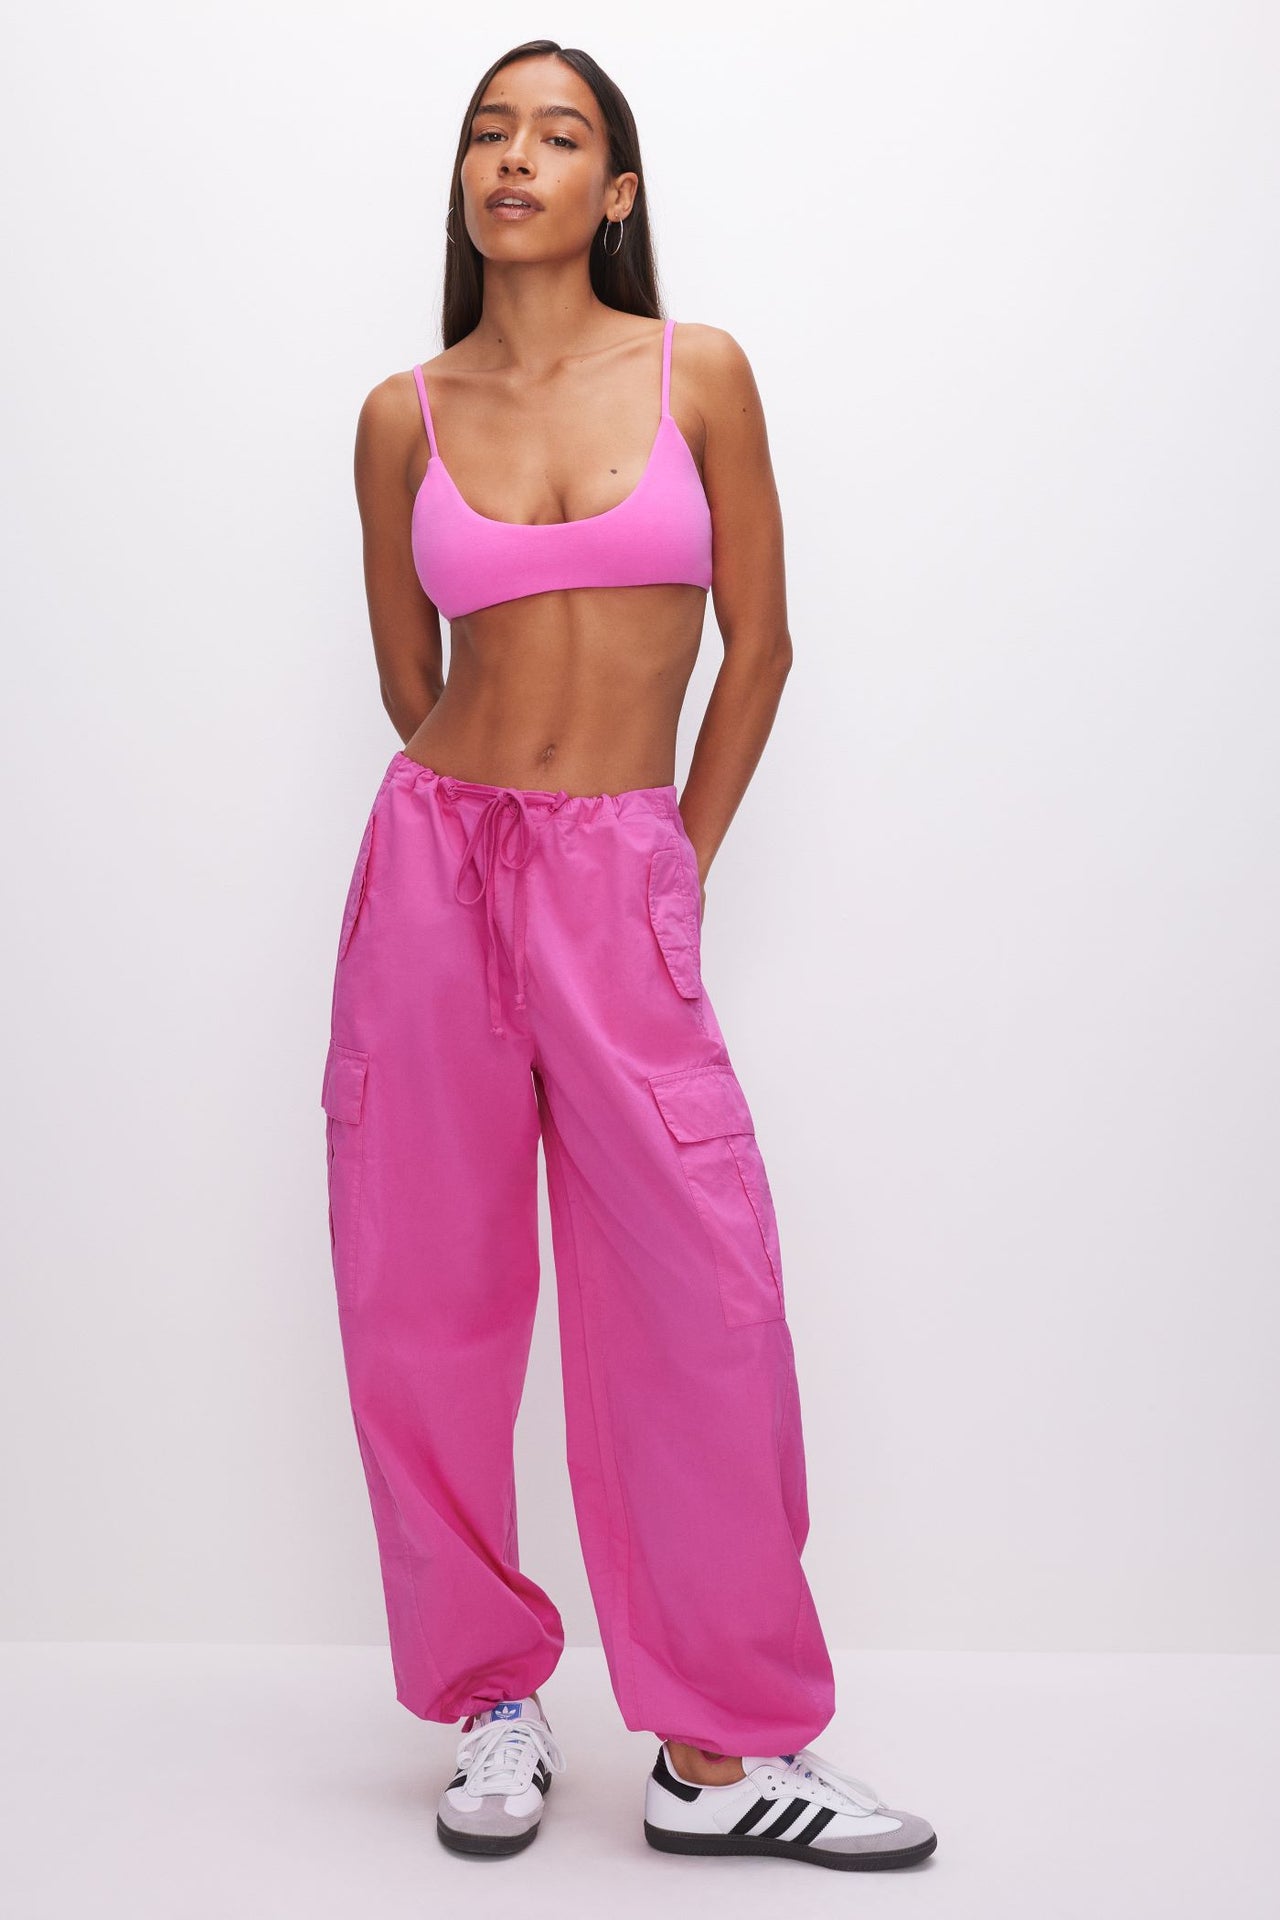 parachute pants calça pink